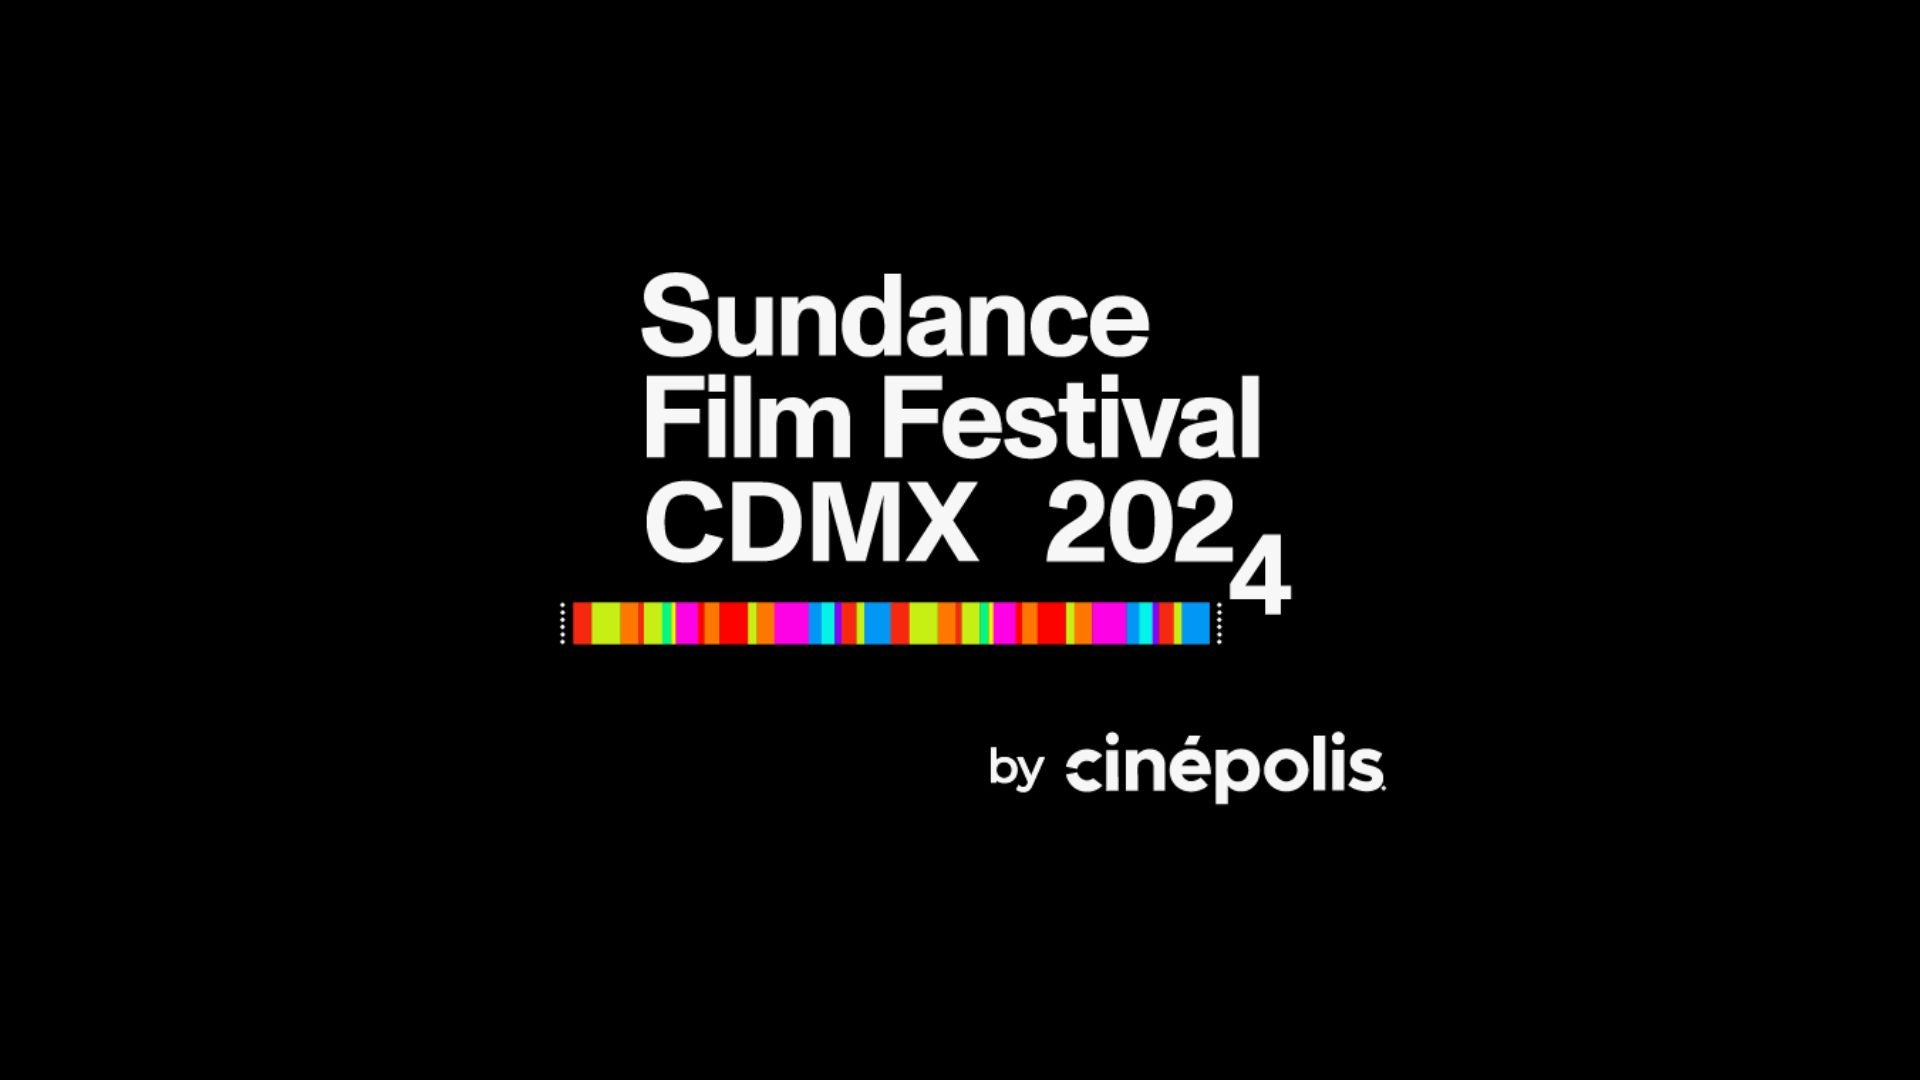 Llega la primera edición del Sundance Film Festival CDMX 2024